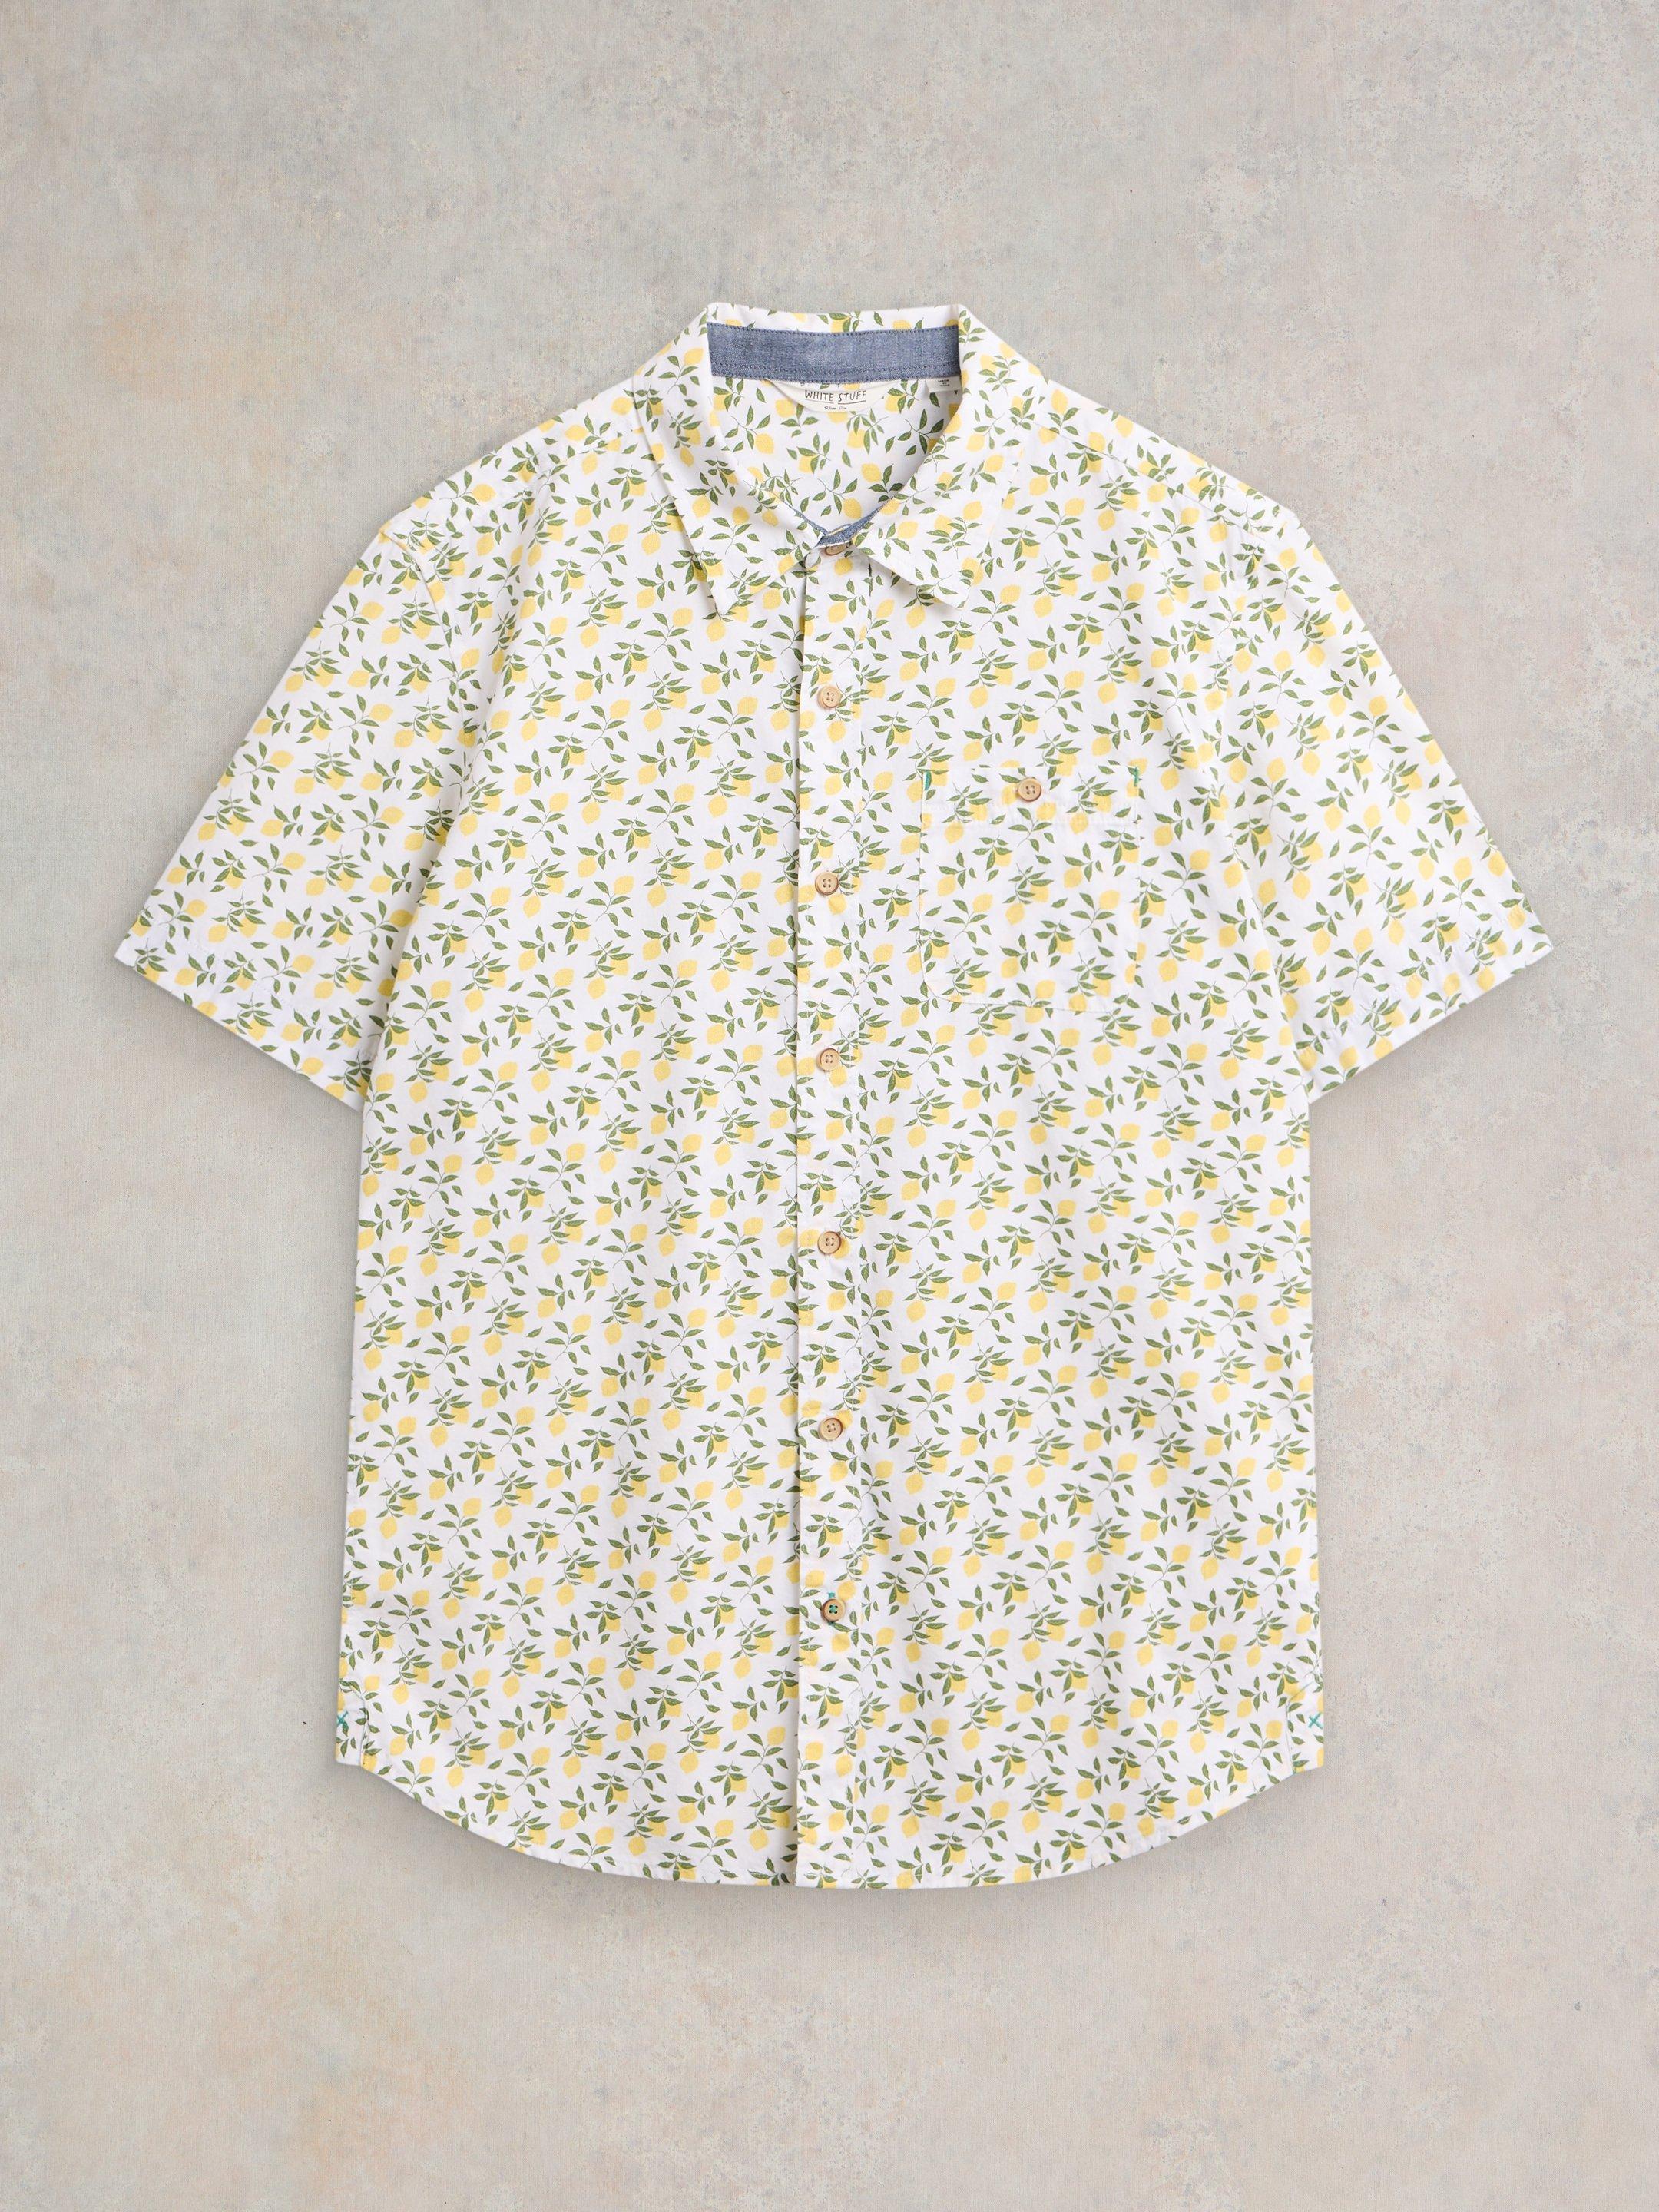 Lemon Printed Shirt in WHITE PR - FLAT FRONT